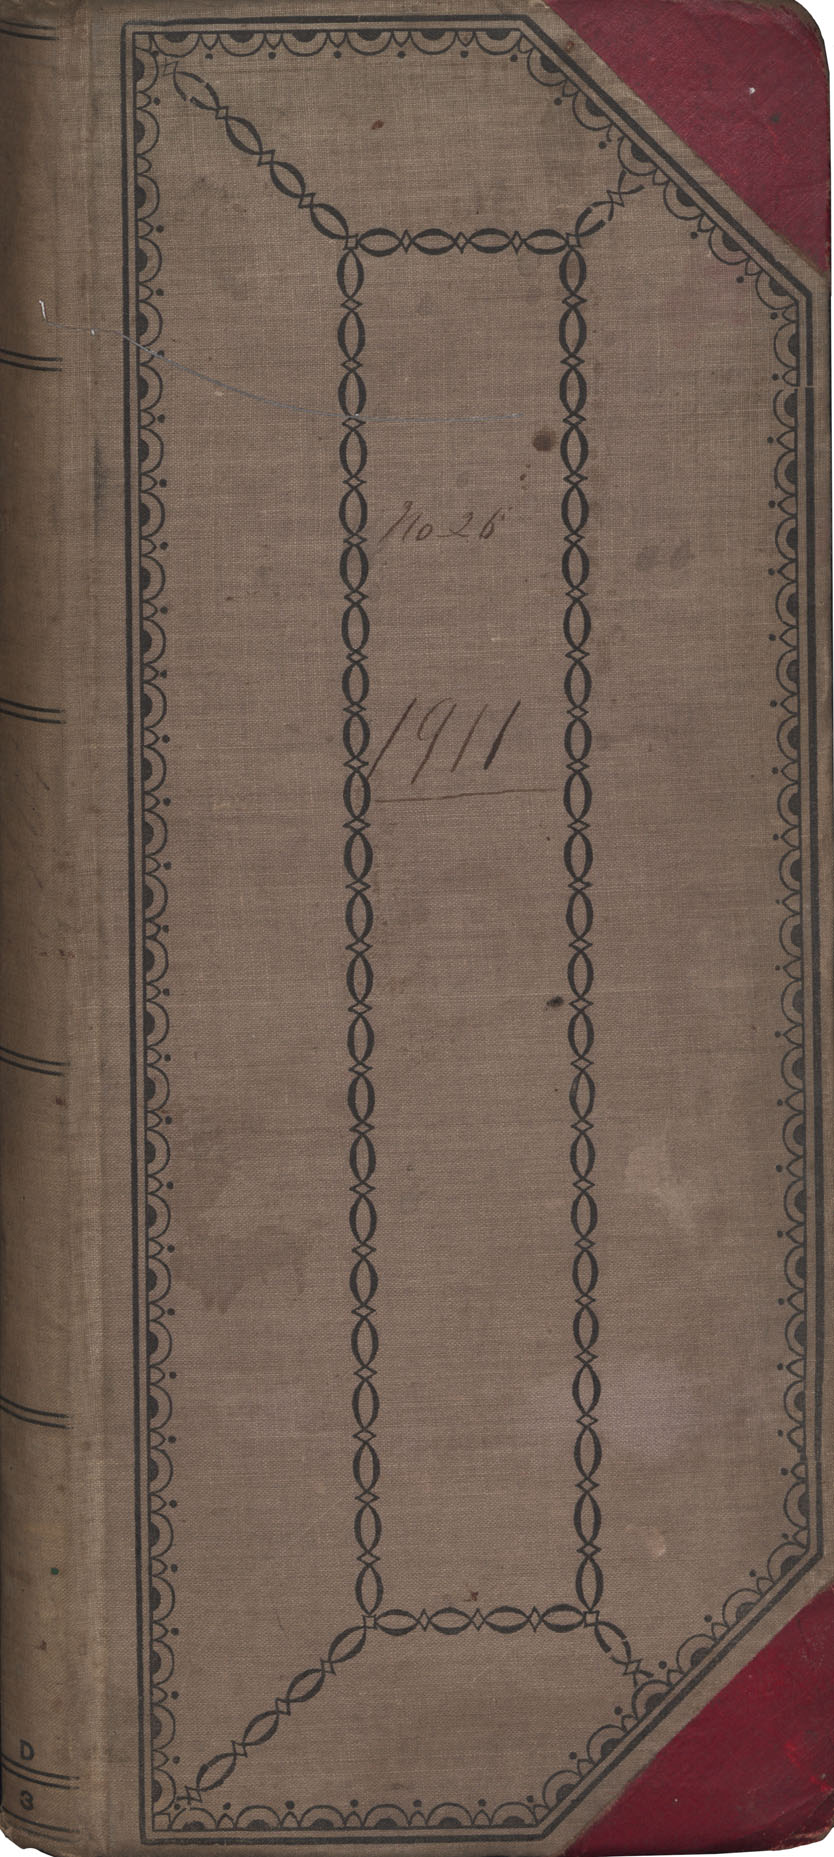 1911 Daybook number 26 